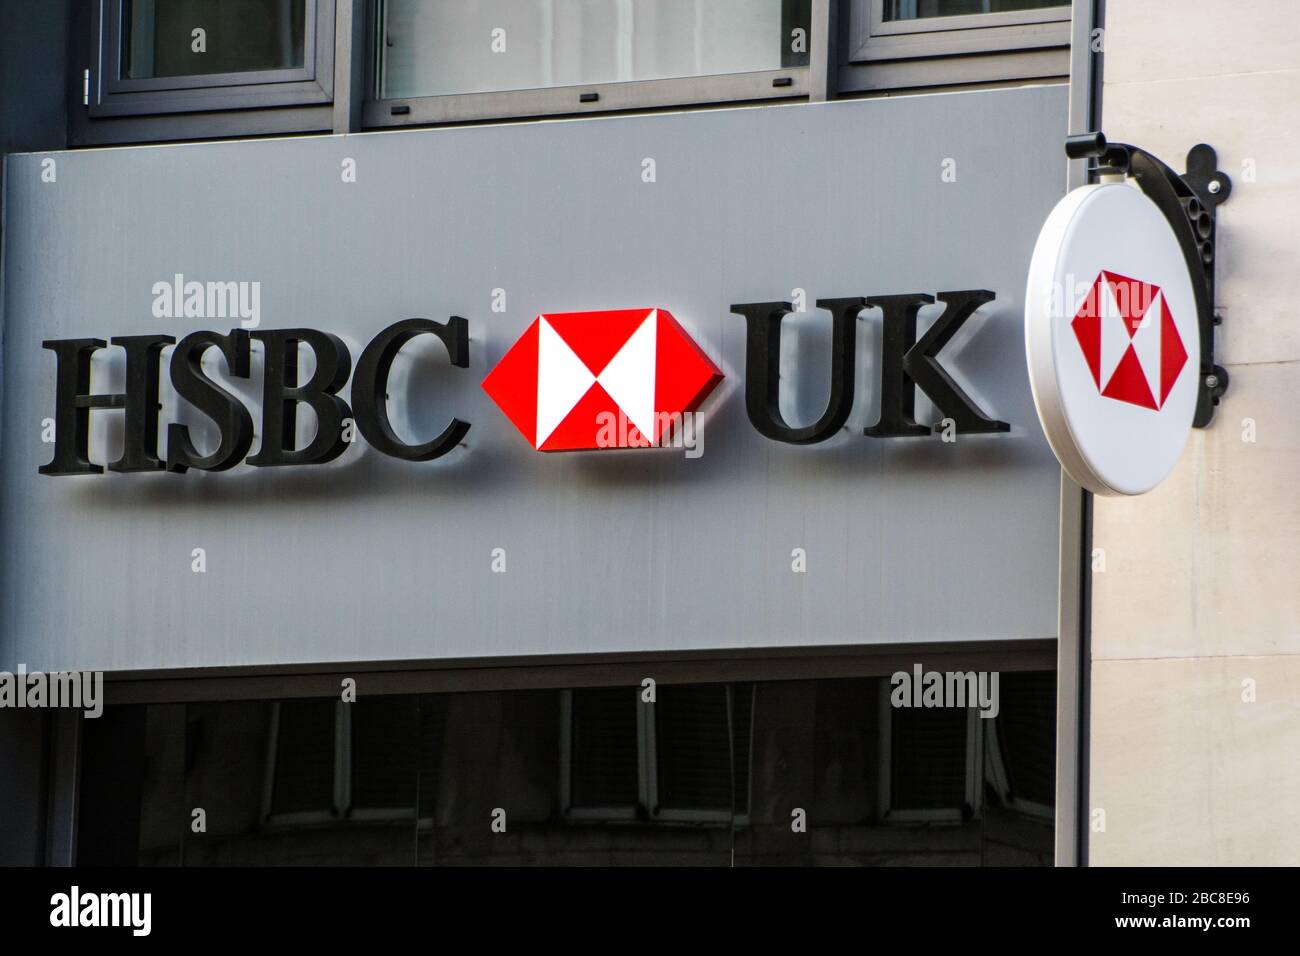 Logotipo de la sucursal de HSBC: Banco comercial y minorista británico de High Street Foto de stock